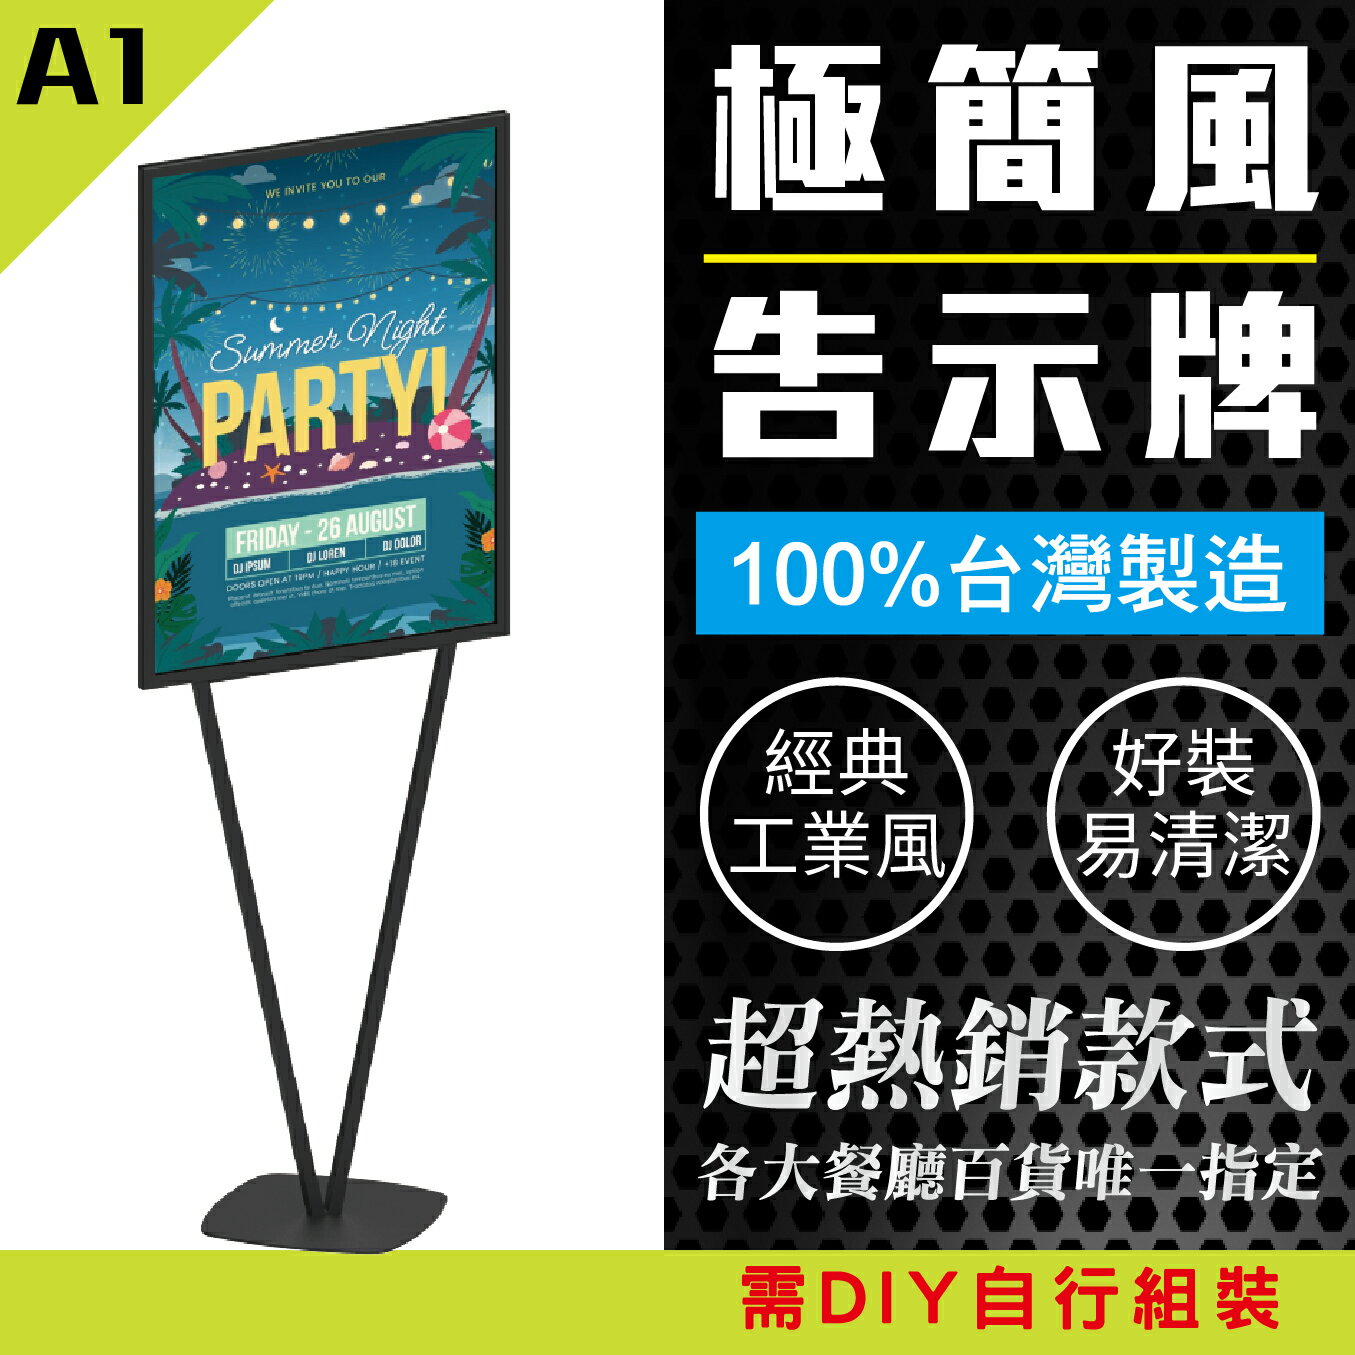 台灣製造 極簡風告示牌 A1尺寸 PV-S11BK 工業風告示牌 黑色烤漆告示牌 落地海報架 公告牌 標示牌 牌子